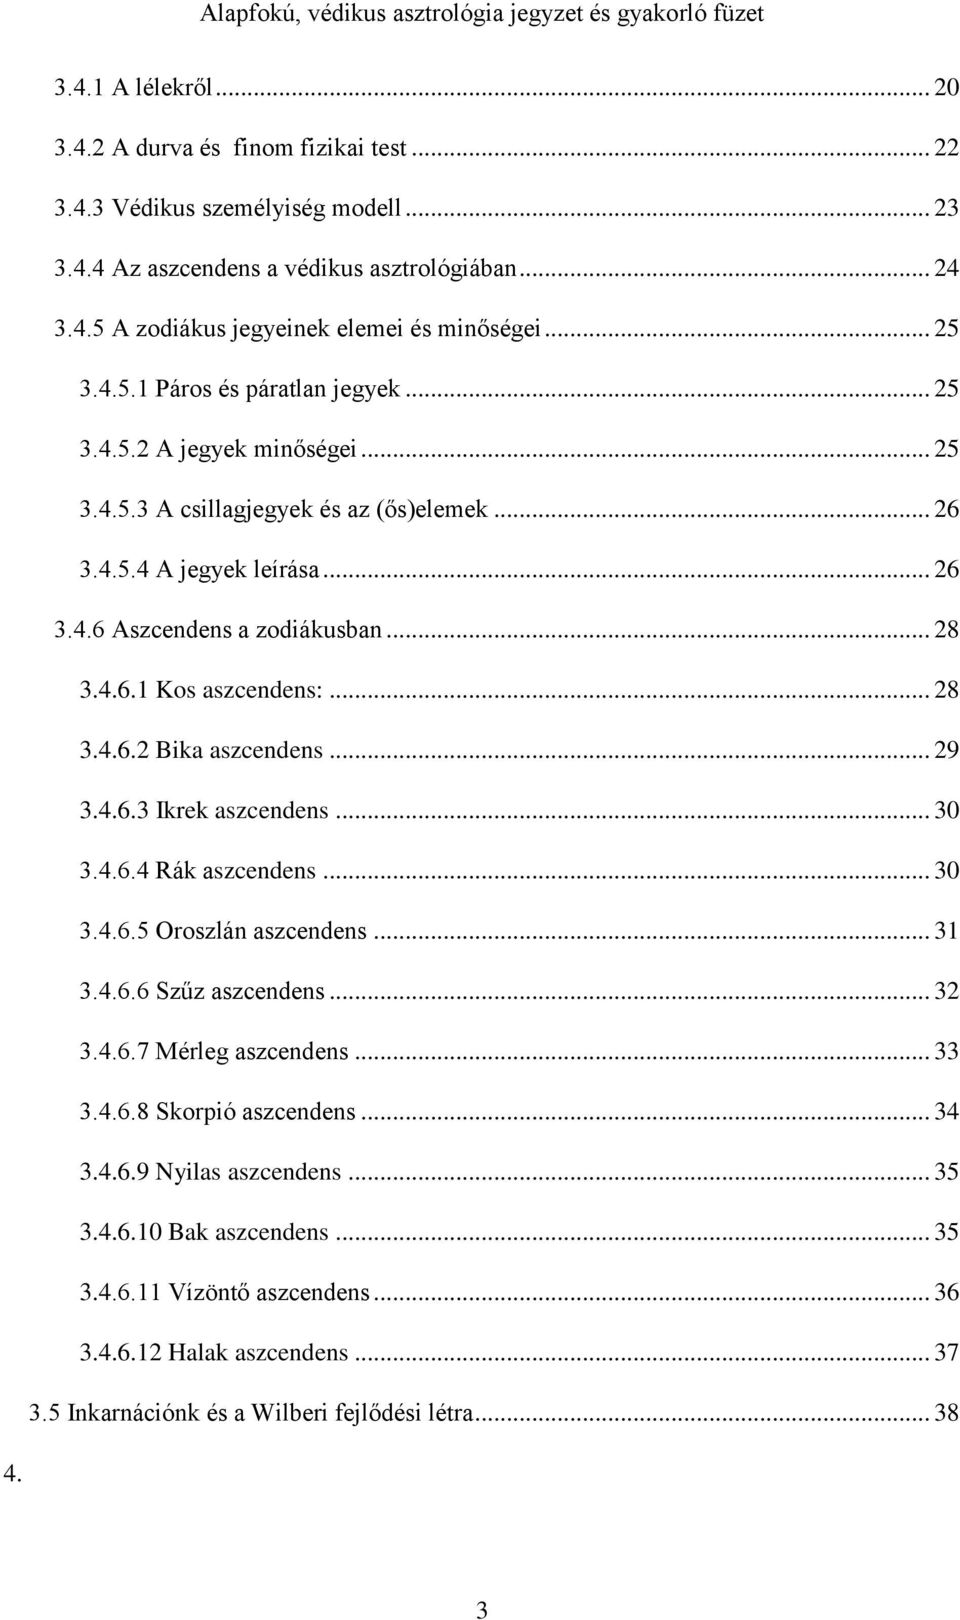 Alapfokú védikus asztrológia tanfolyam - PDF Ingyenes letöltés